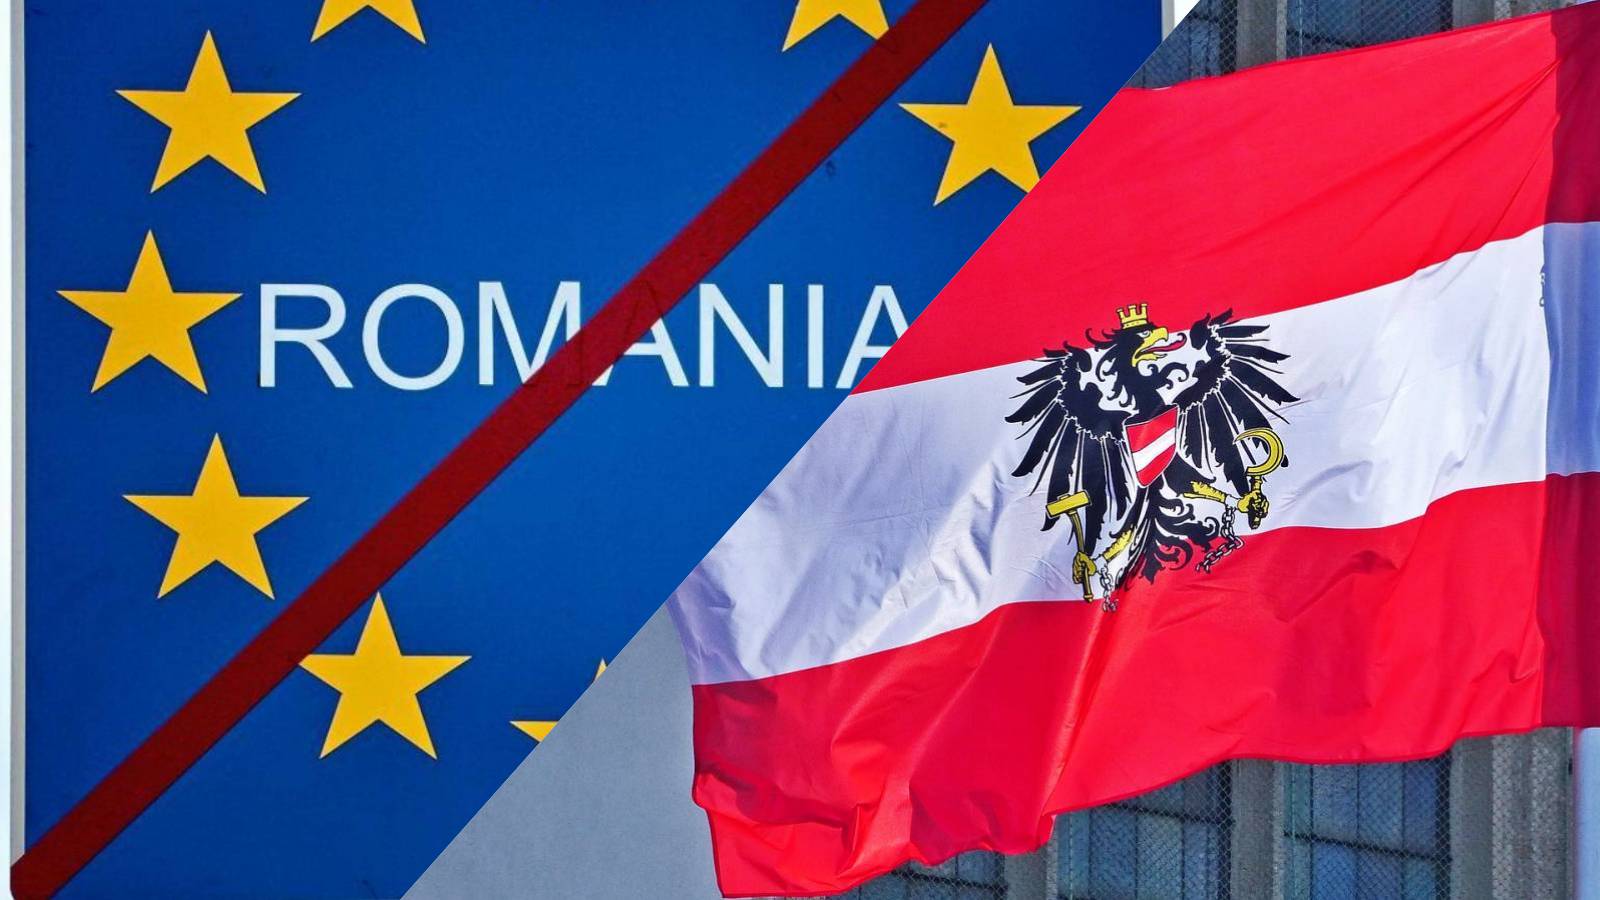 Austria solicita la aplicación oficial de medidas urgentes que rechazan la adhesión de Rumania a Schengen